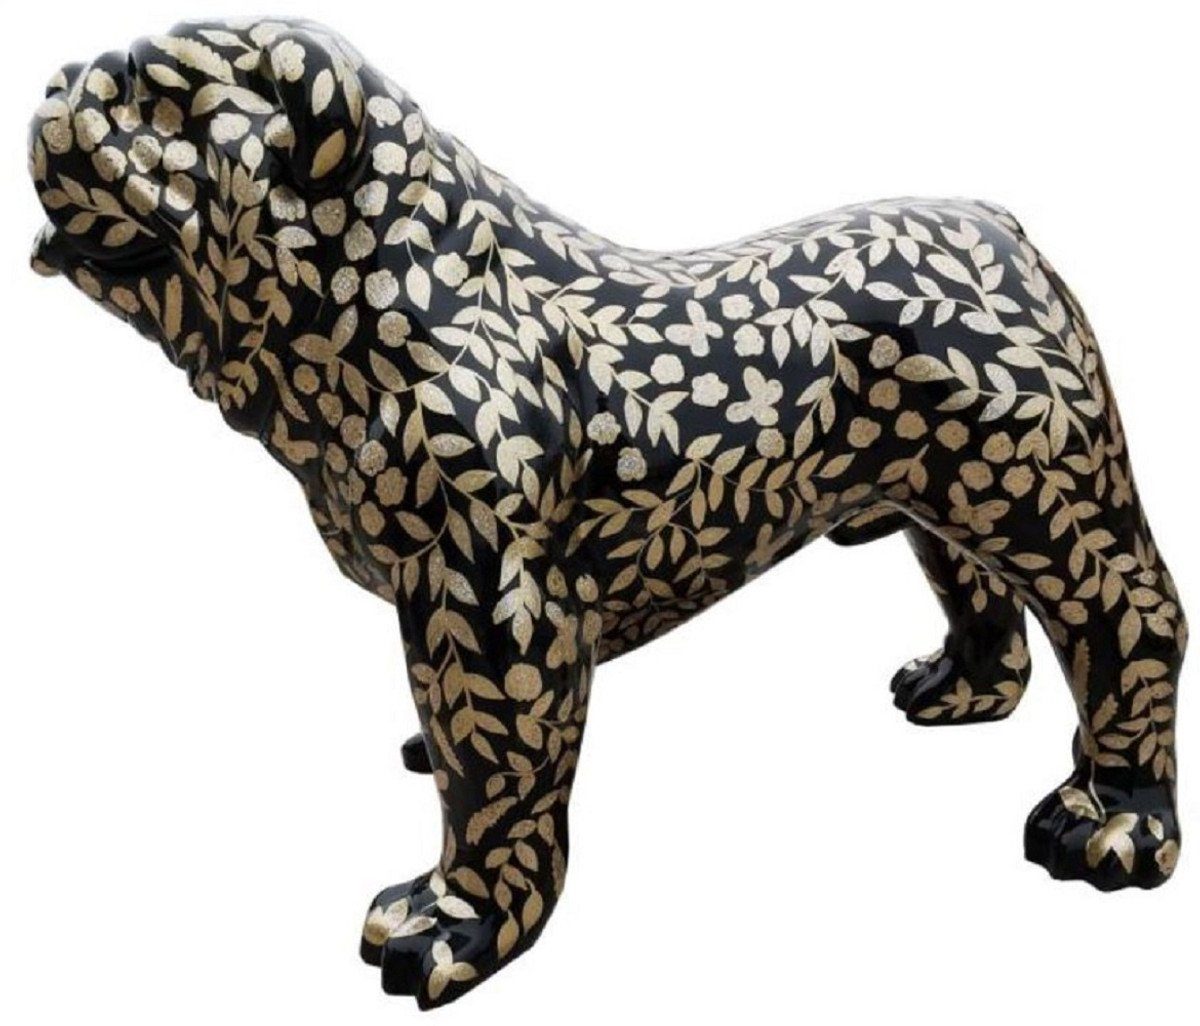 Casa Padrino Skulptur Luxus Dekofigur Hund Bulldogge Schwarz / Weiß 59 x H.  40 cm - Wetterbeständige Deko Skulptur - Wohnzimmer Deko Figur - Garten  Deko Figur - Luxus Deko Tierfigur